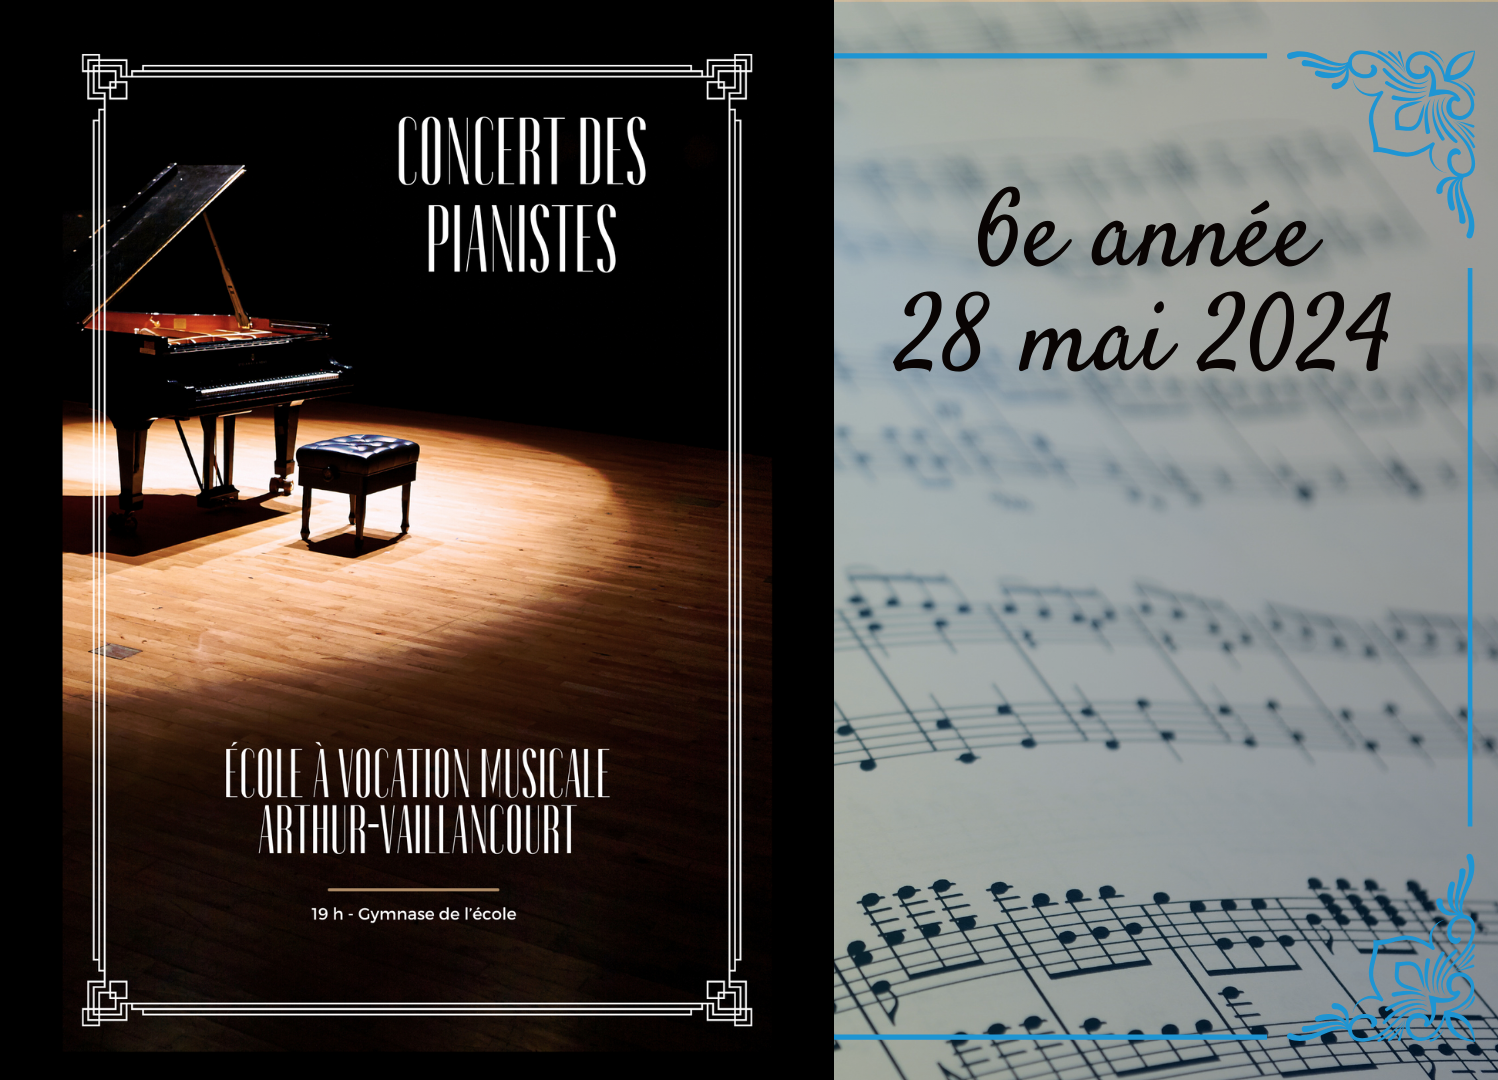 Concert de piano - 6e année (28 mai 2024)